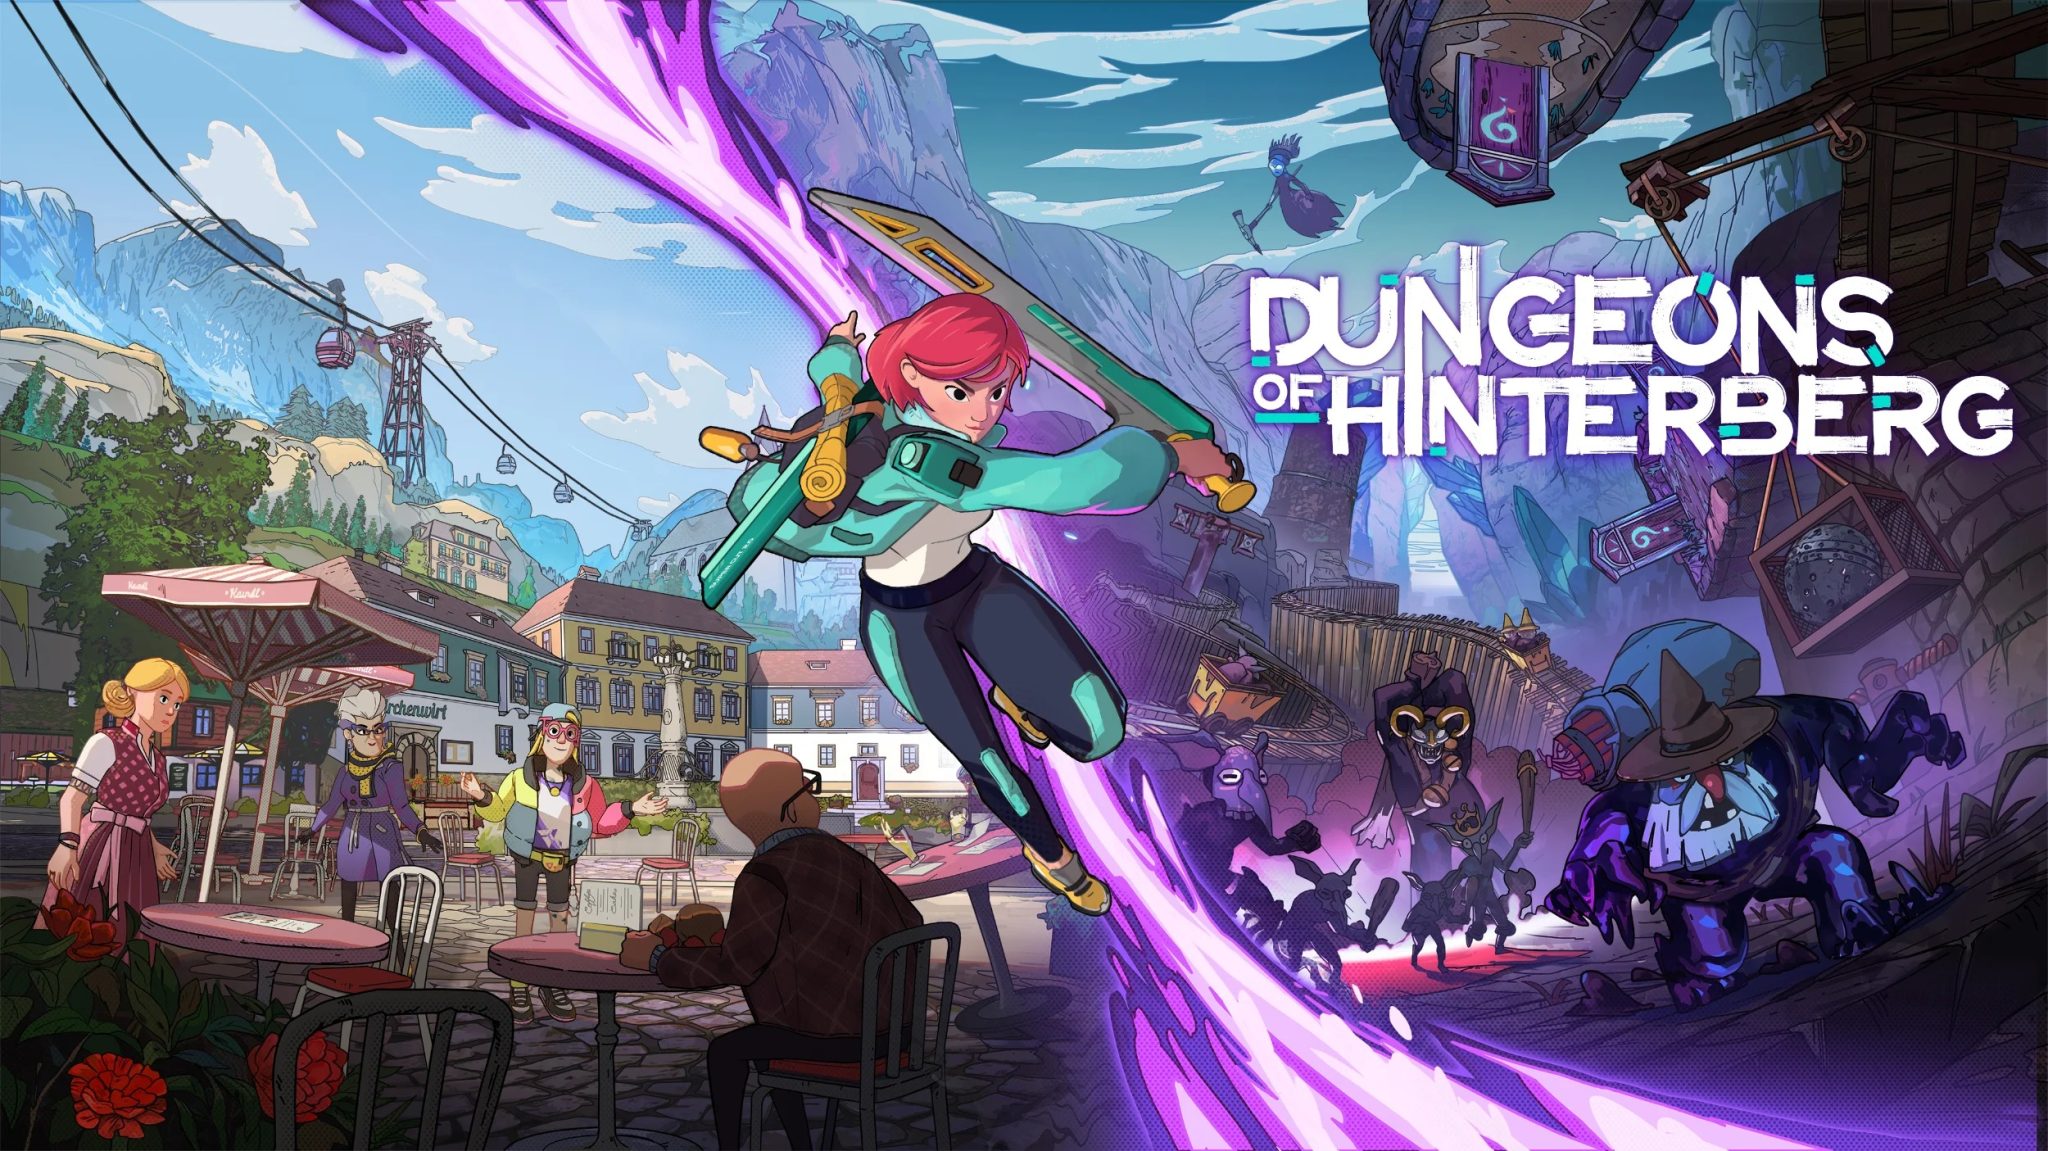 Ya es oficial: Dungeons of Hinterberg saldrá a la venta el 18 de julio.